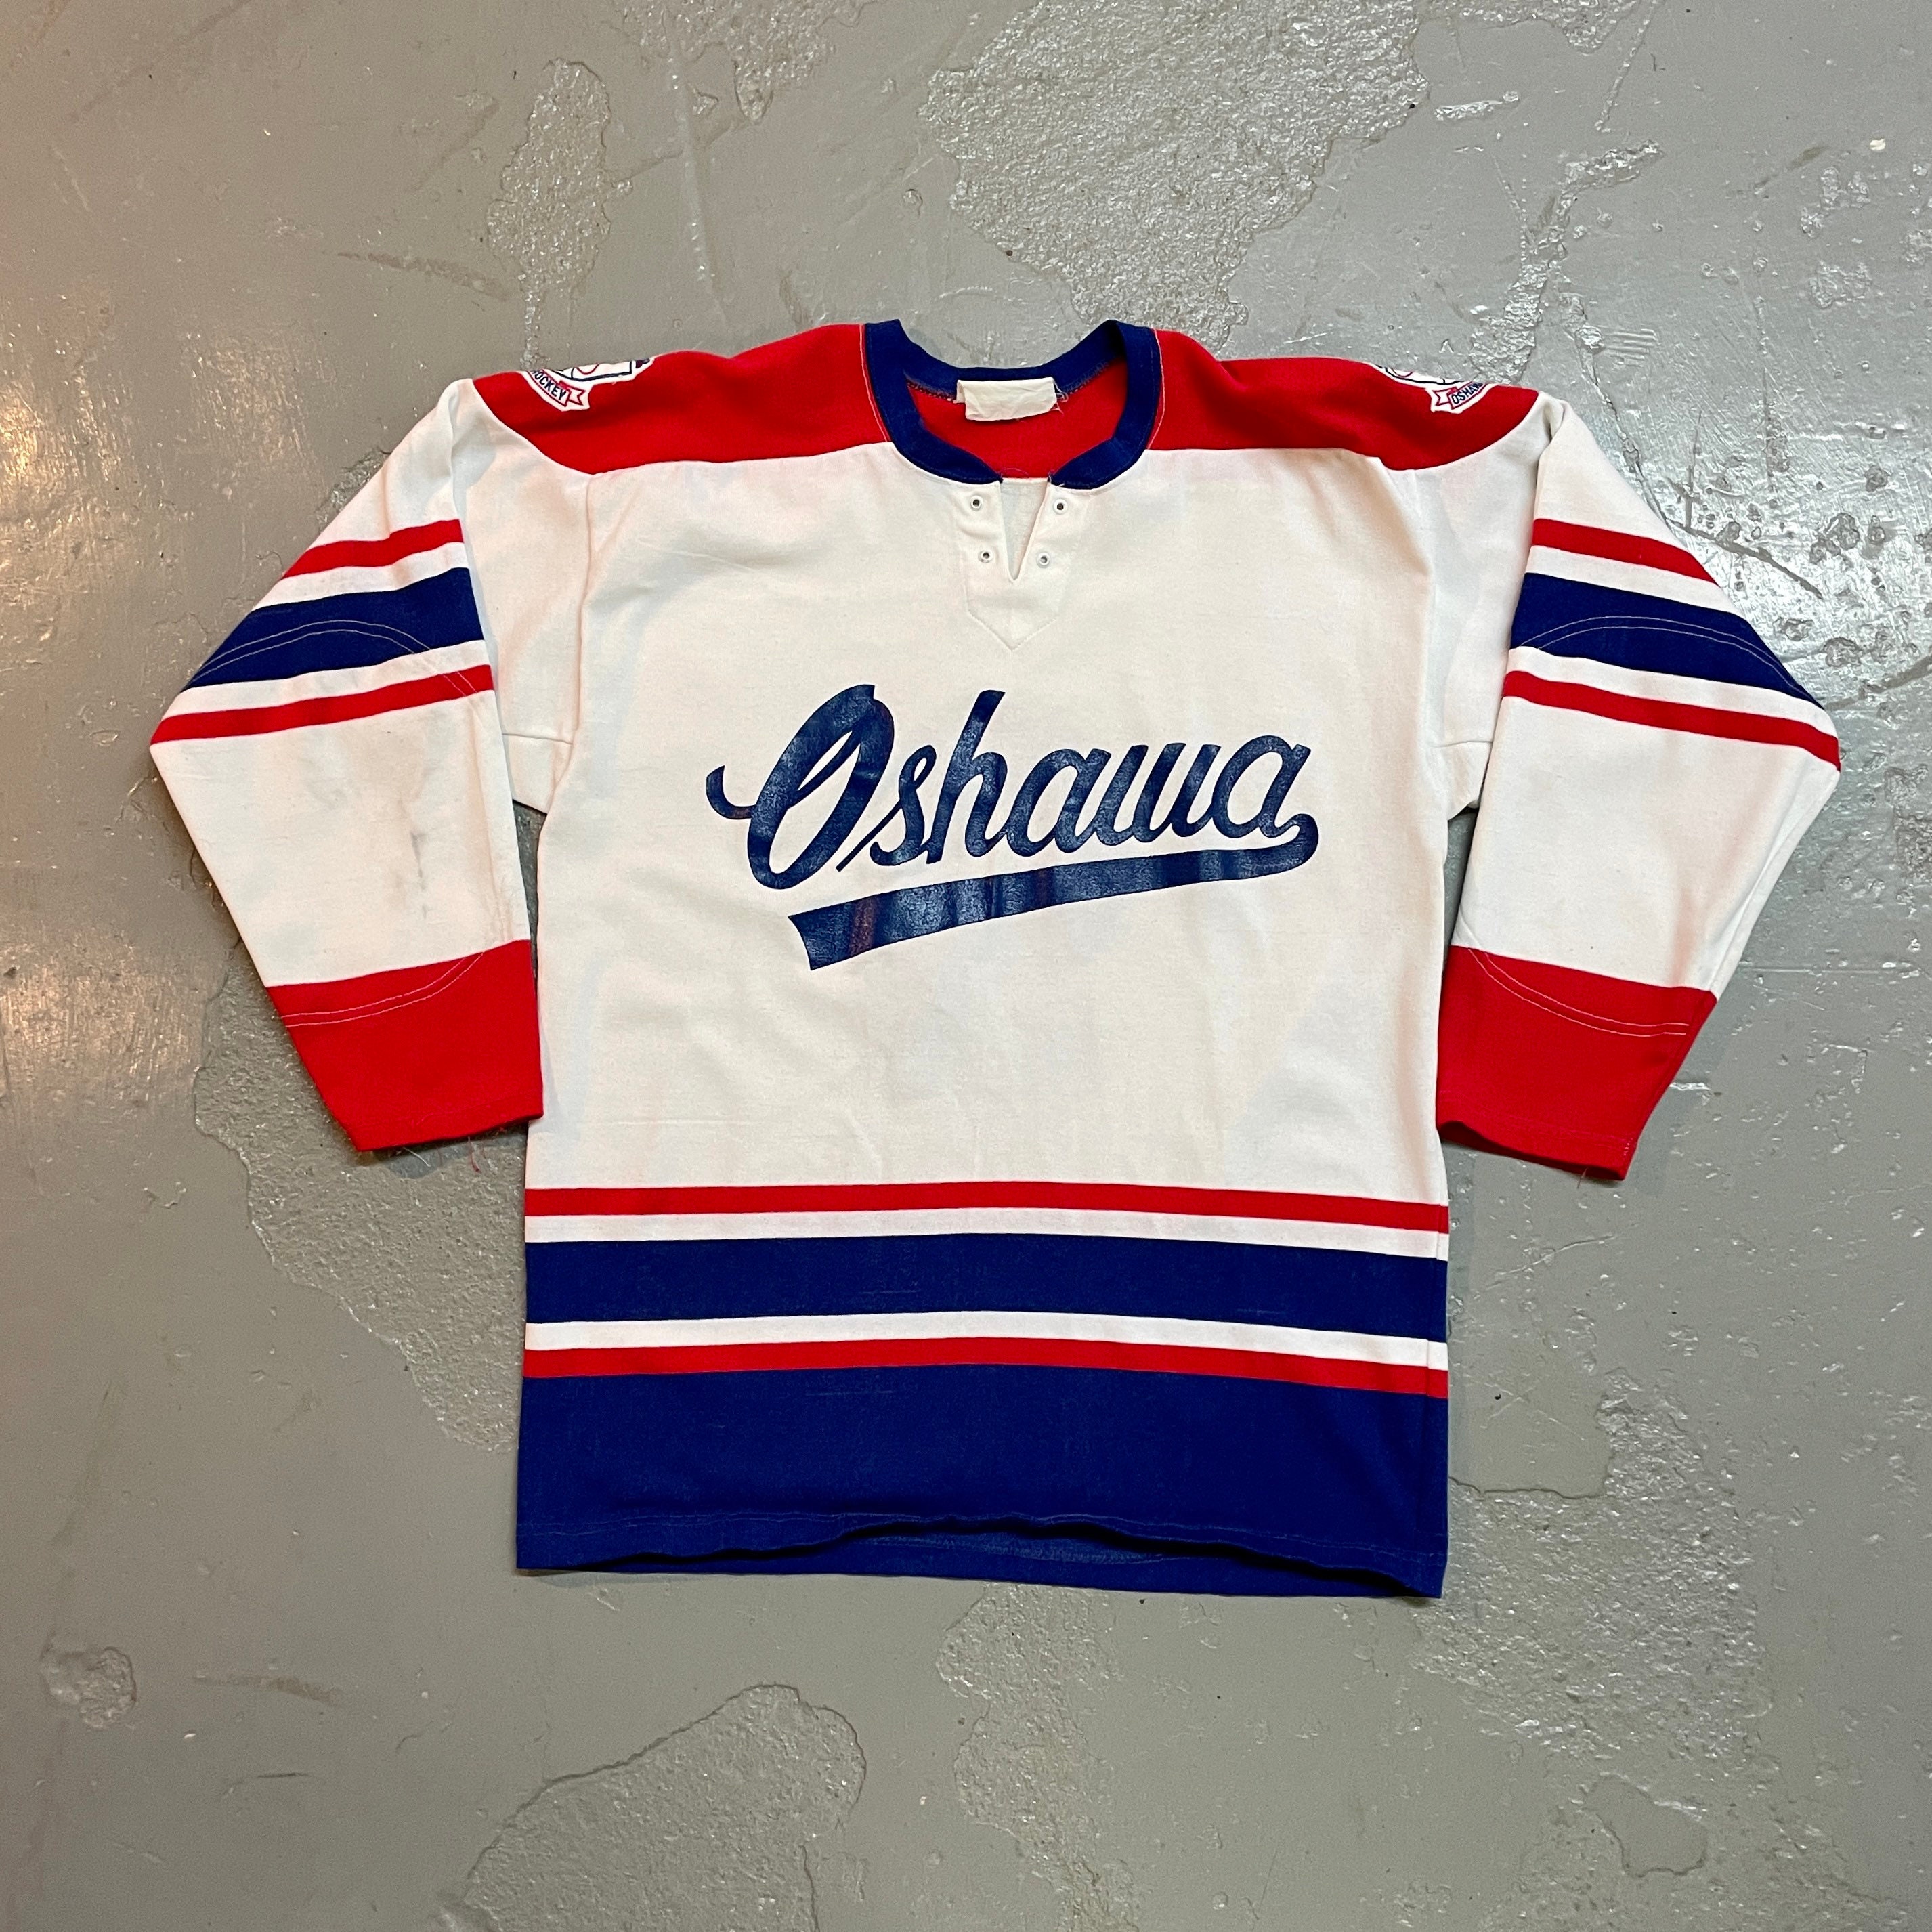 Rare Vintage 1970's New Era Knitting NHL Chicago Blackhawks Hockey Jersey